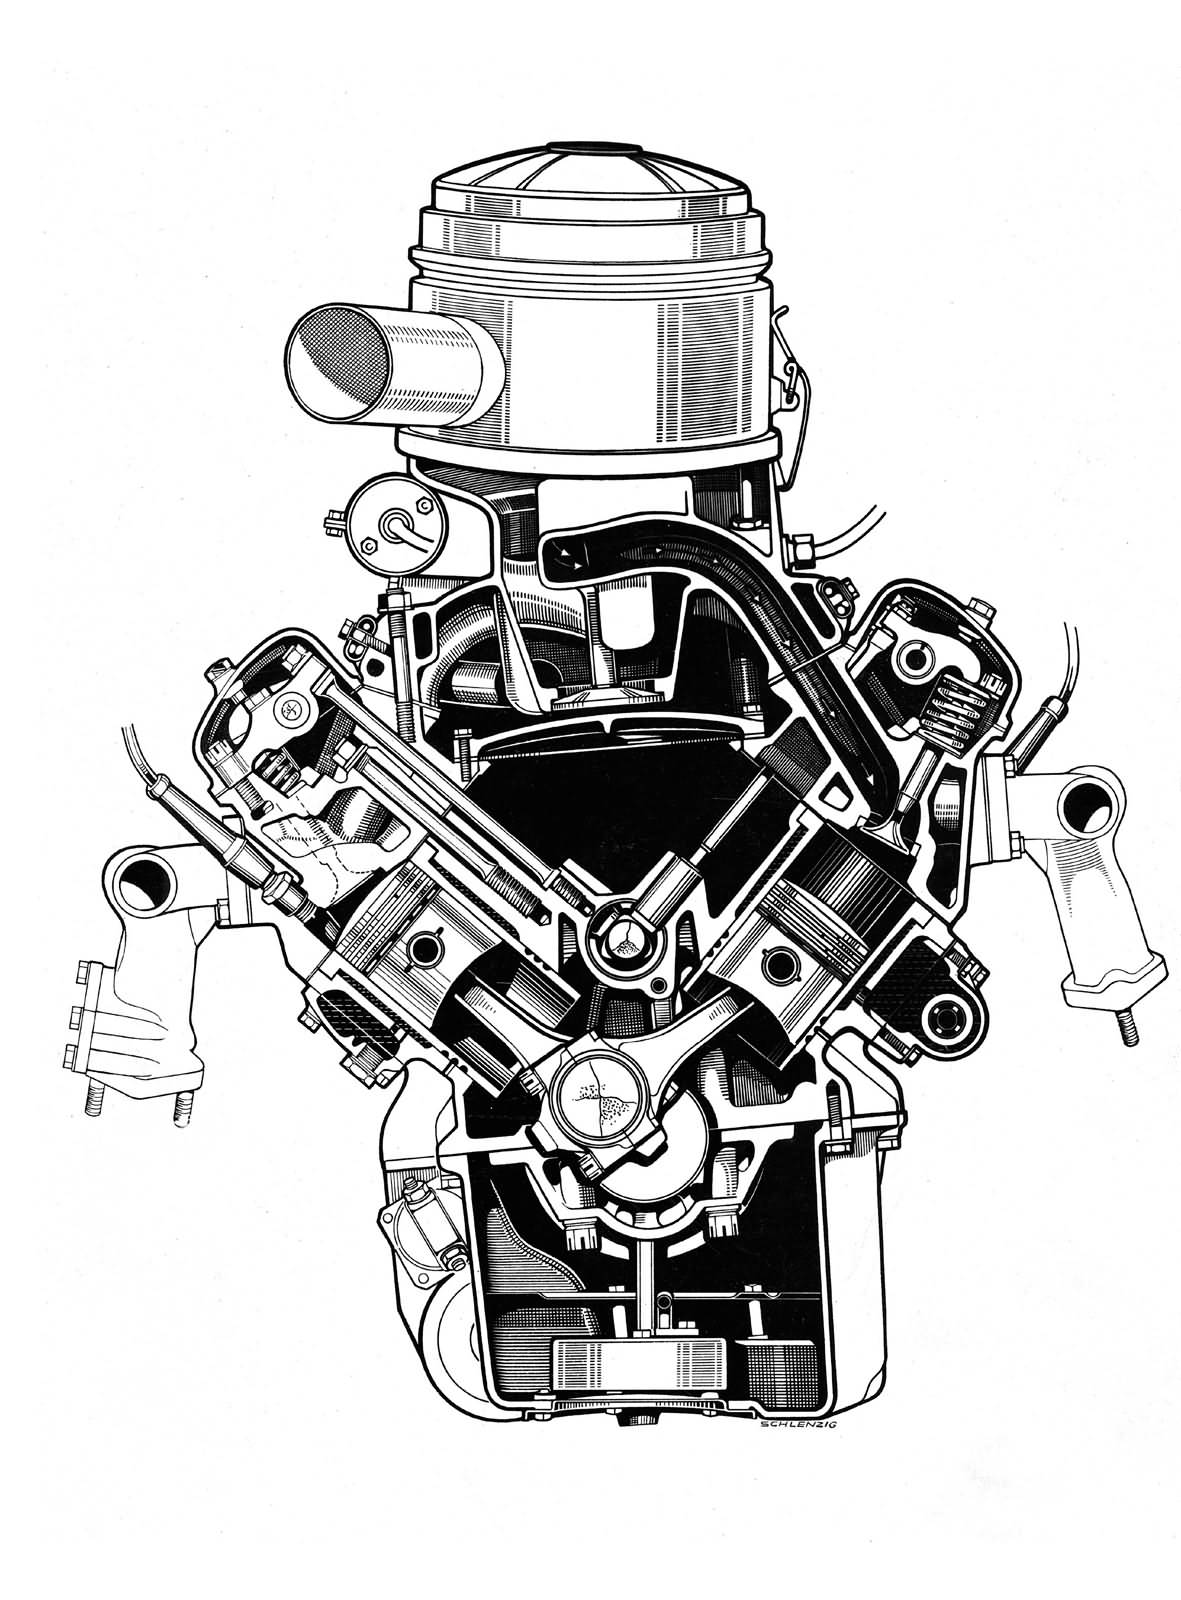 1954: Der erste V8 Motor mit Vollaluminiumblock